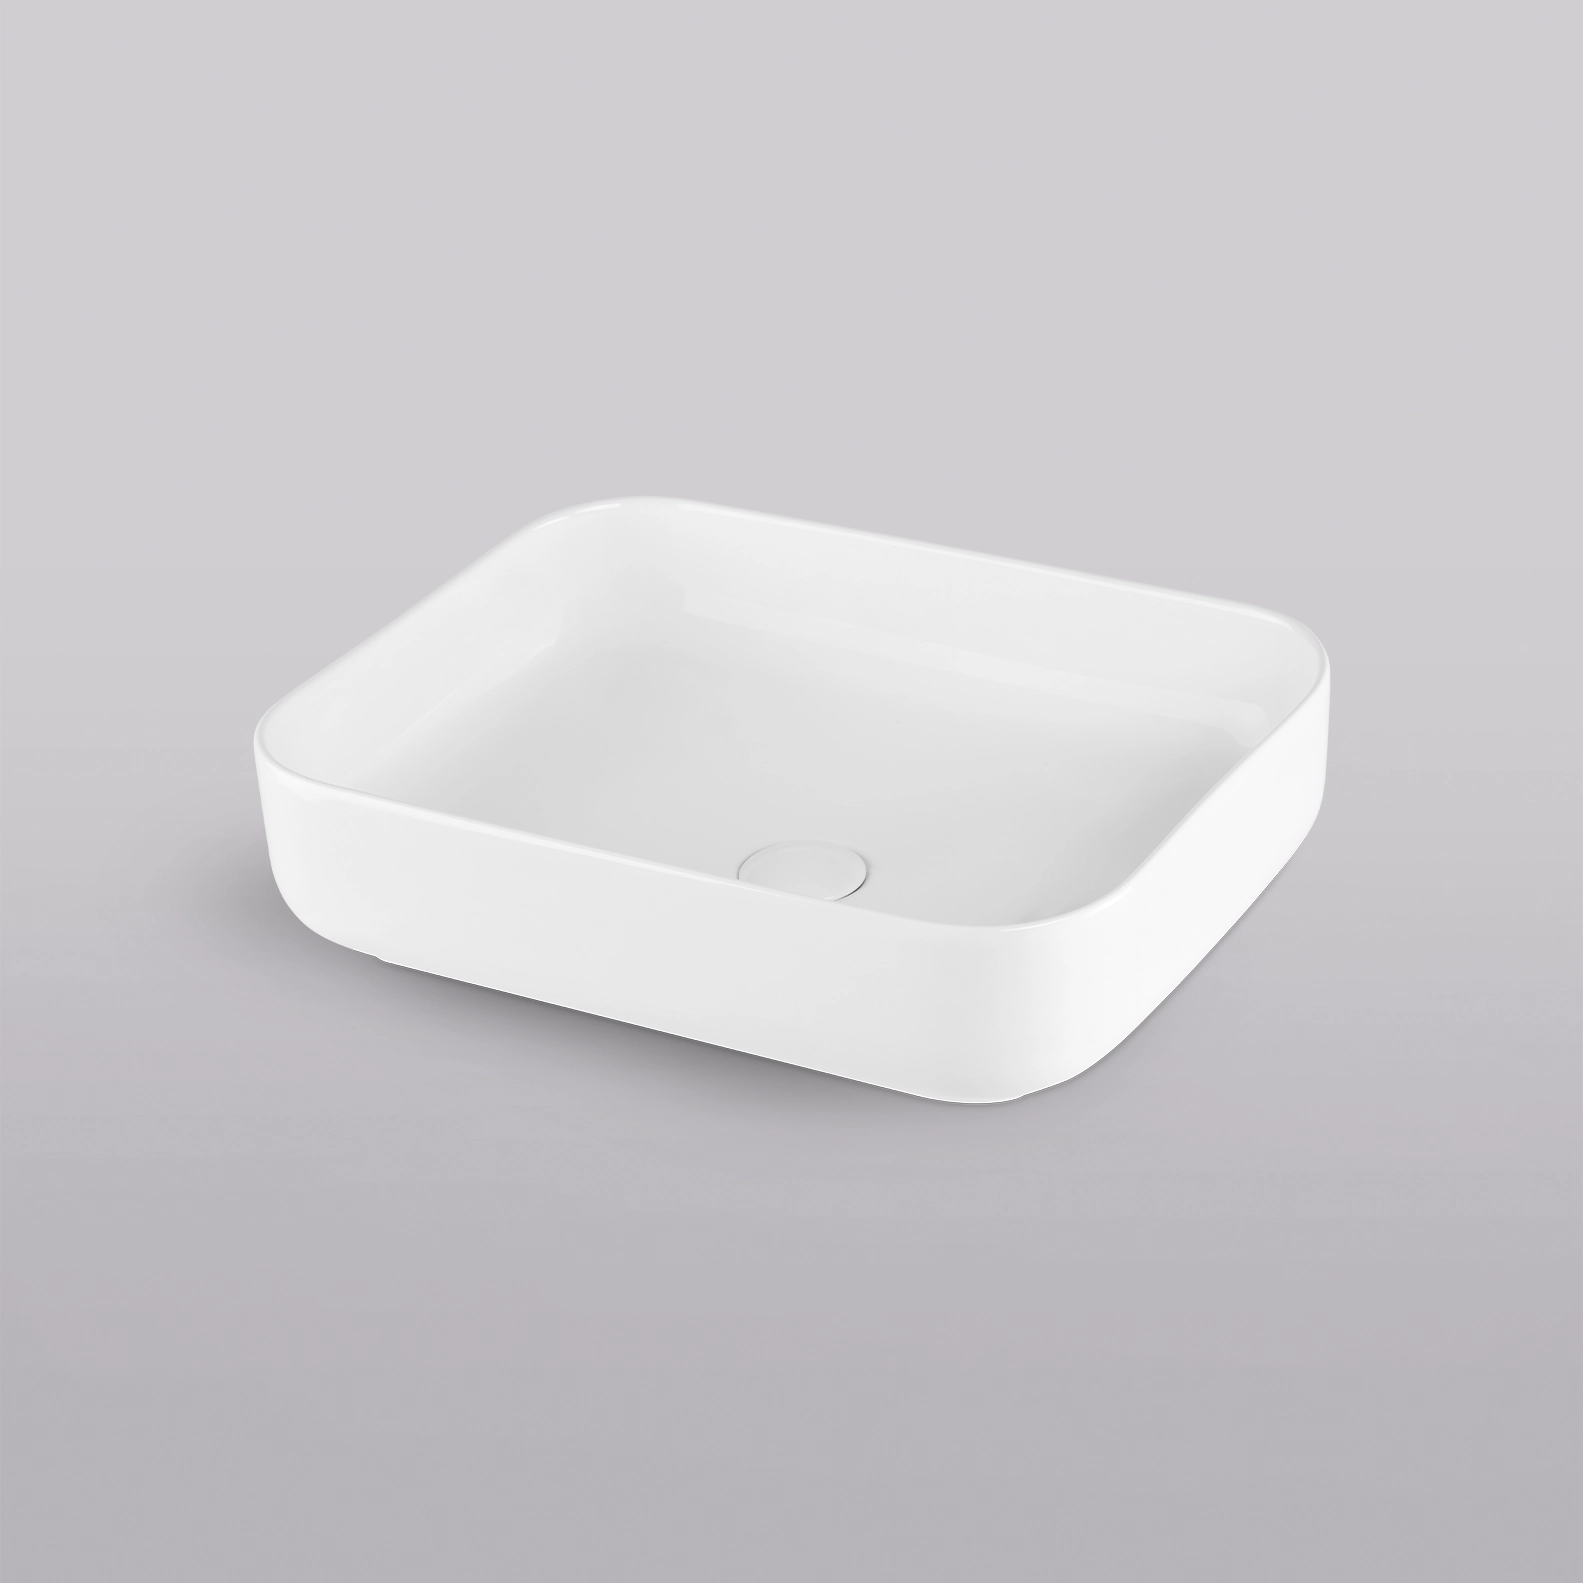 Lavabos Cerazul - lavabo blanco brillo formato rectangular de cantos redondeados